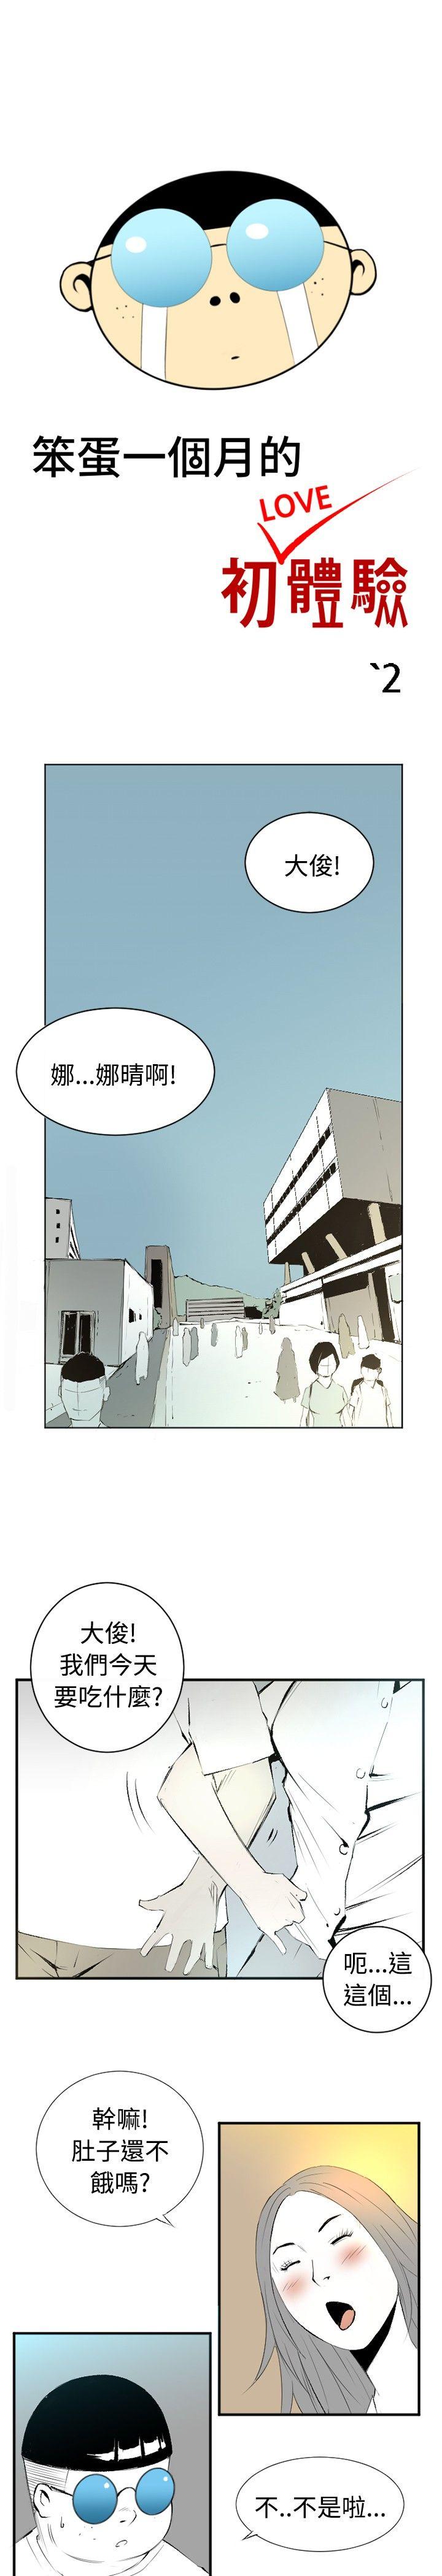 韩国污漫画 10人10色：初體驗 钱葛意-笨蛋一个月的初体验(下) 1